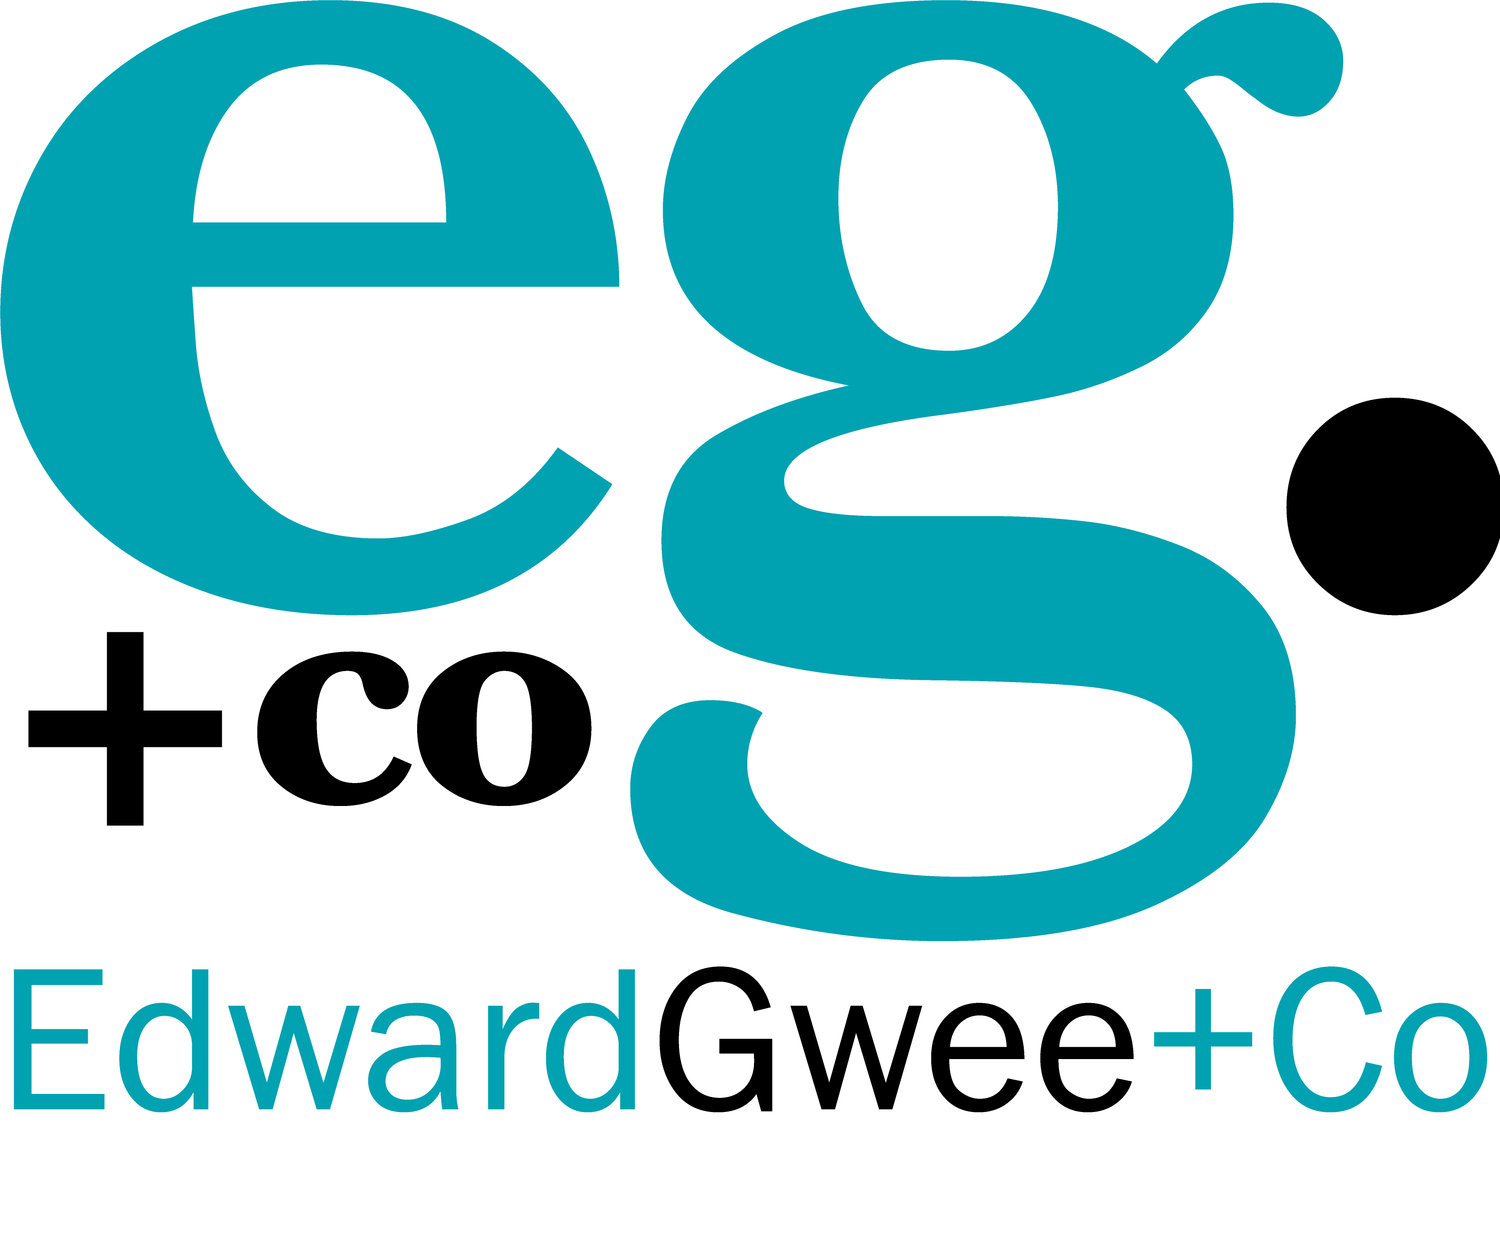 Edward Gwee & Co